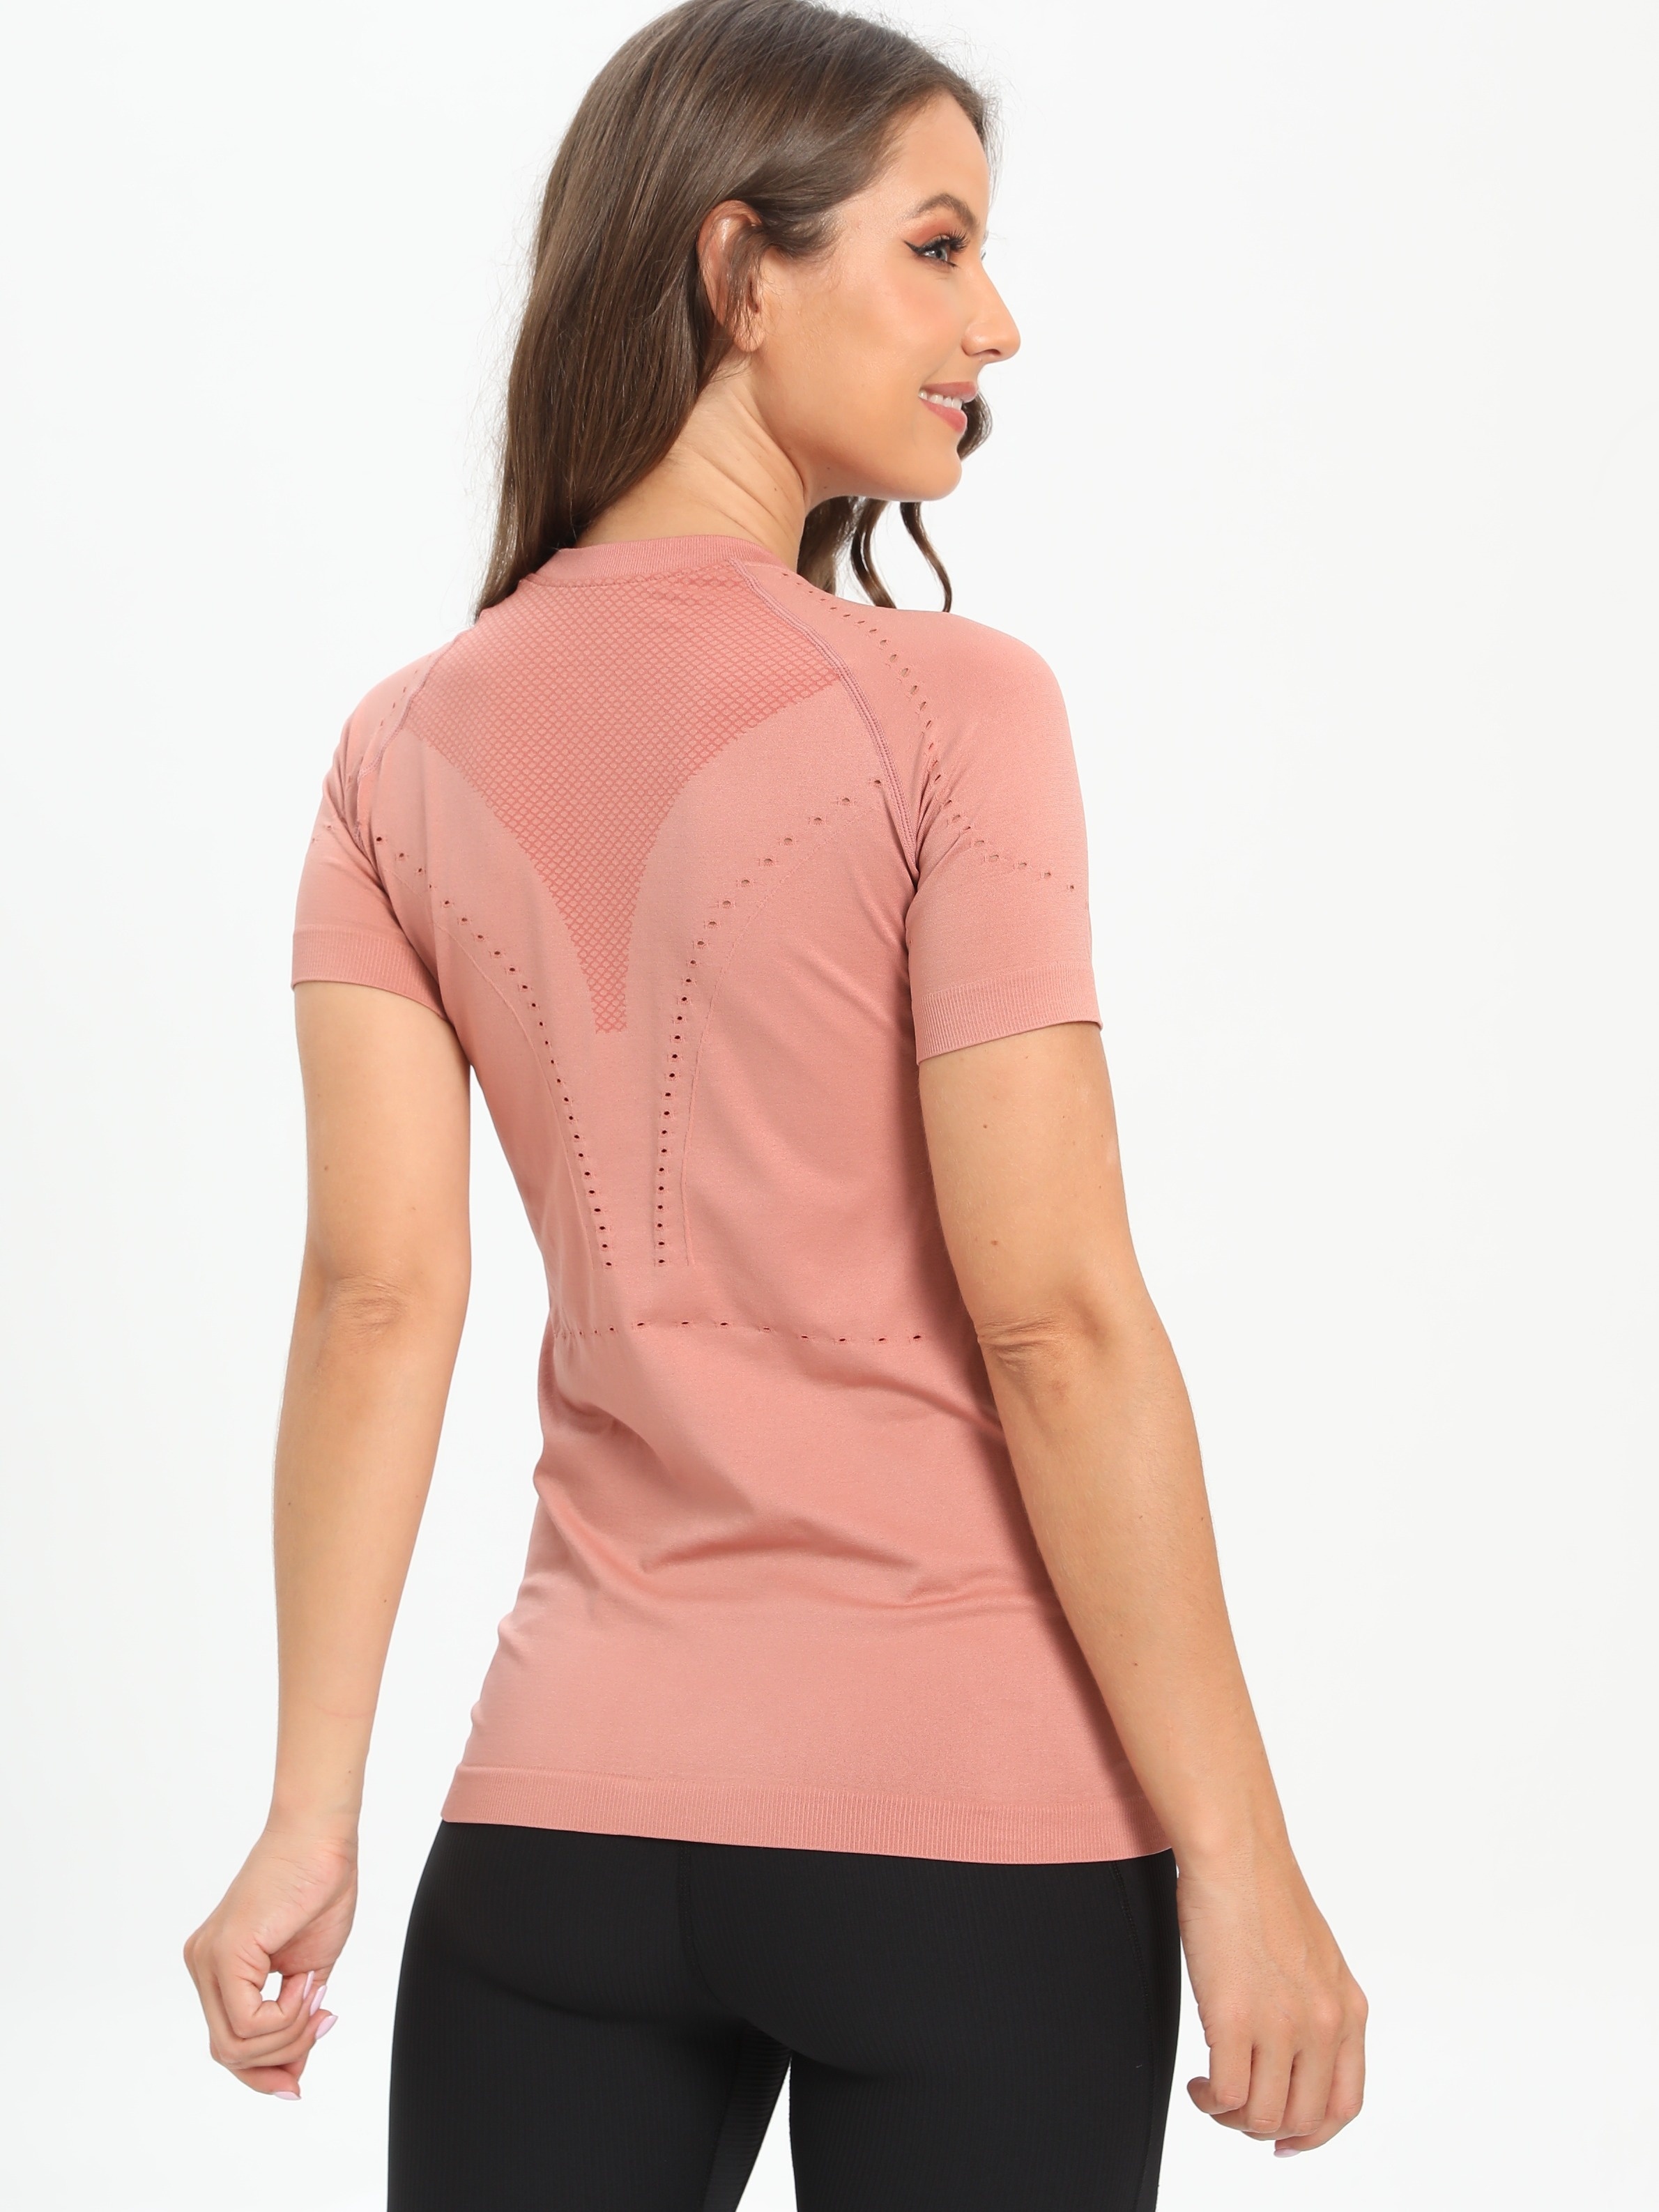 Sunisery Women Workout Crop Tops Short Sleeve Round Neck Asymmetrical Yoga  Running T-Shirts 